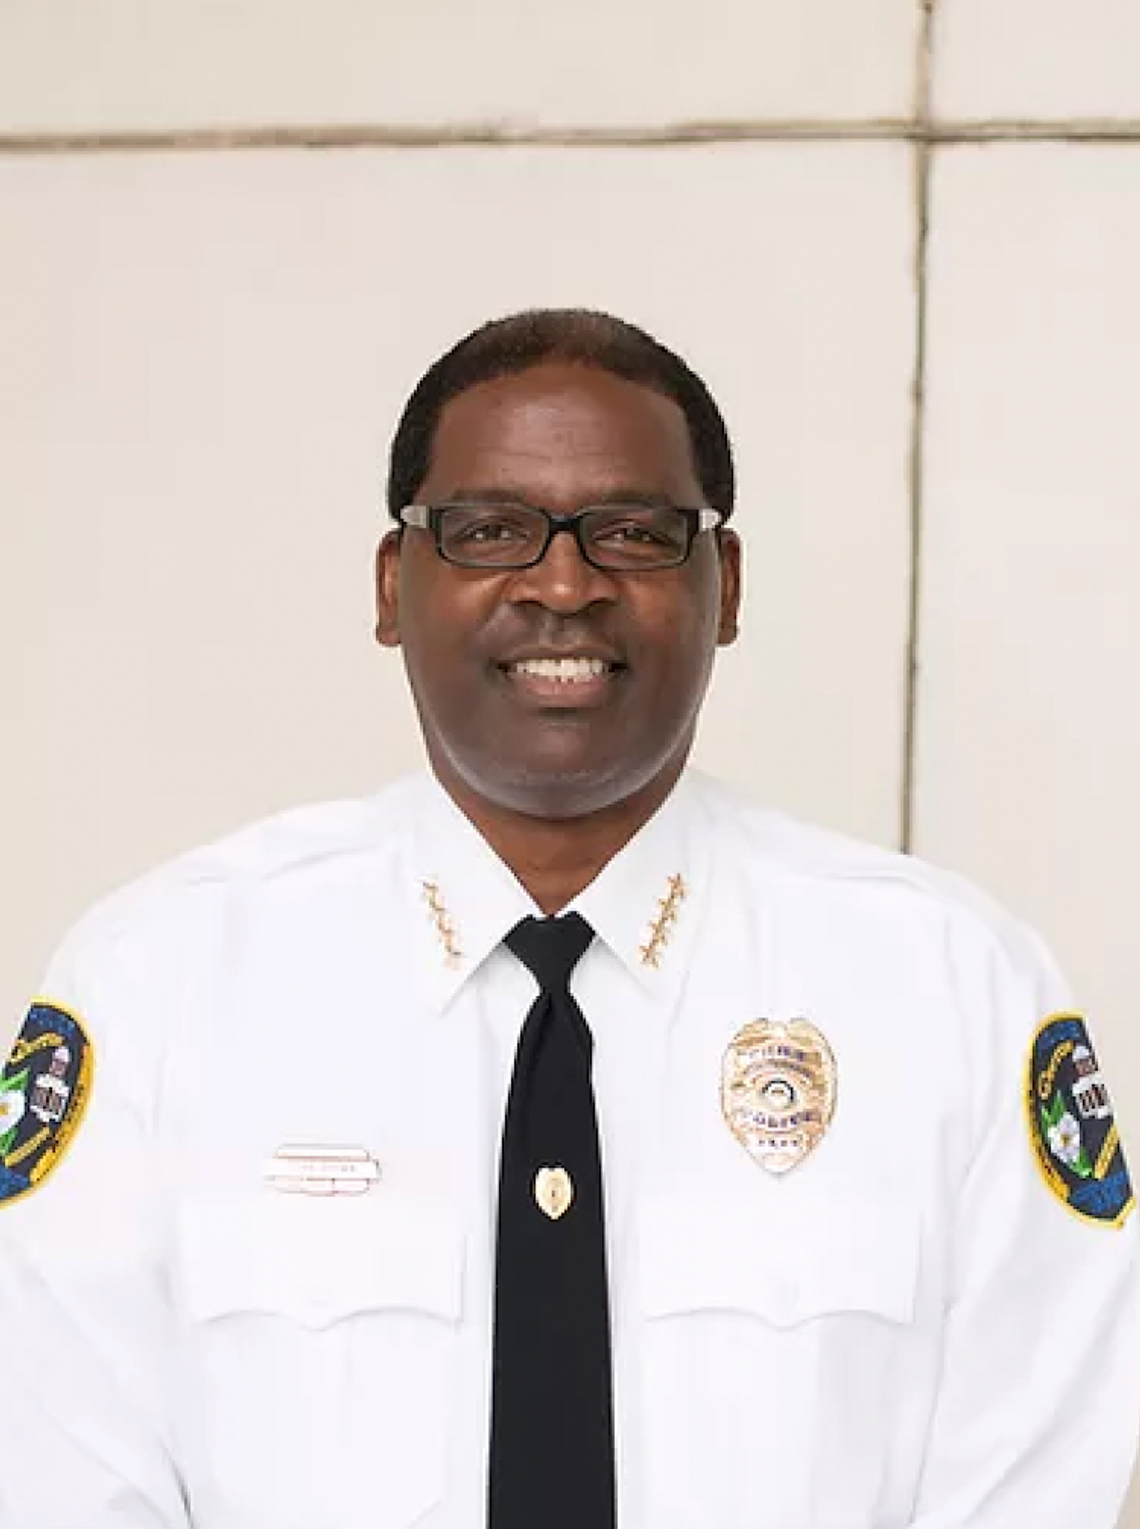 City Spotlight: Police Chief Otha Brown